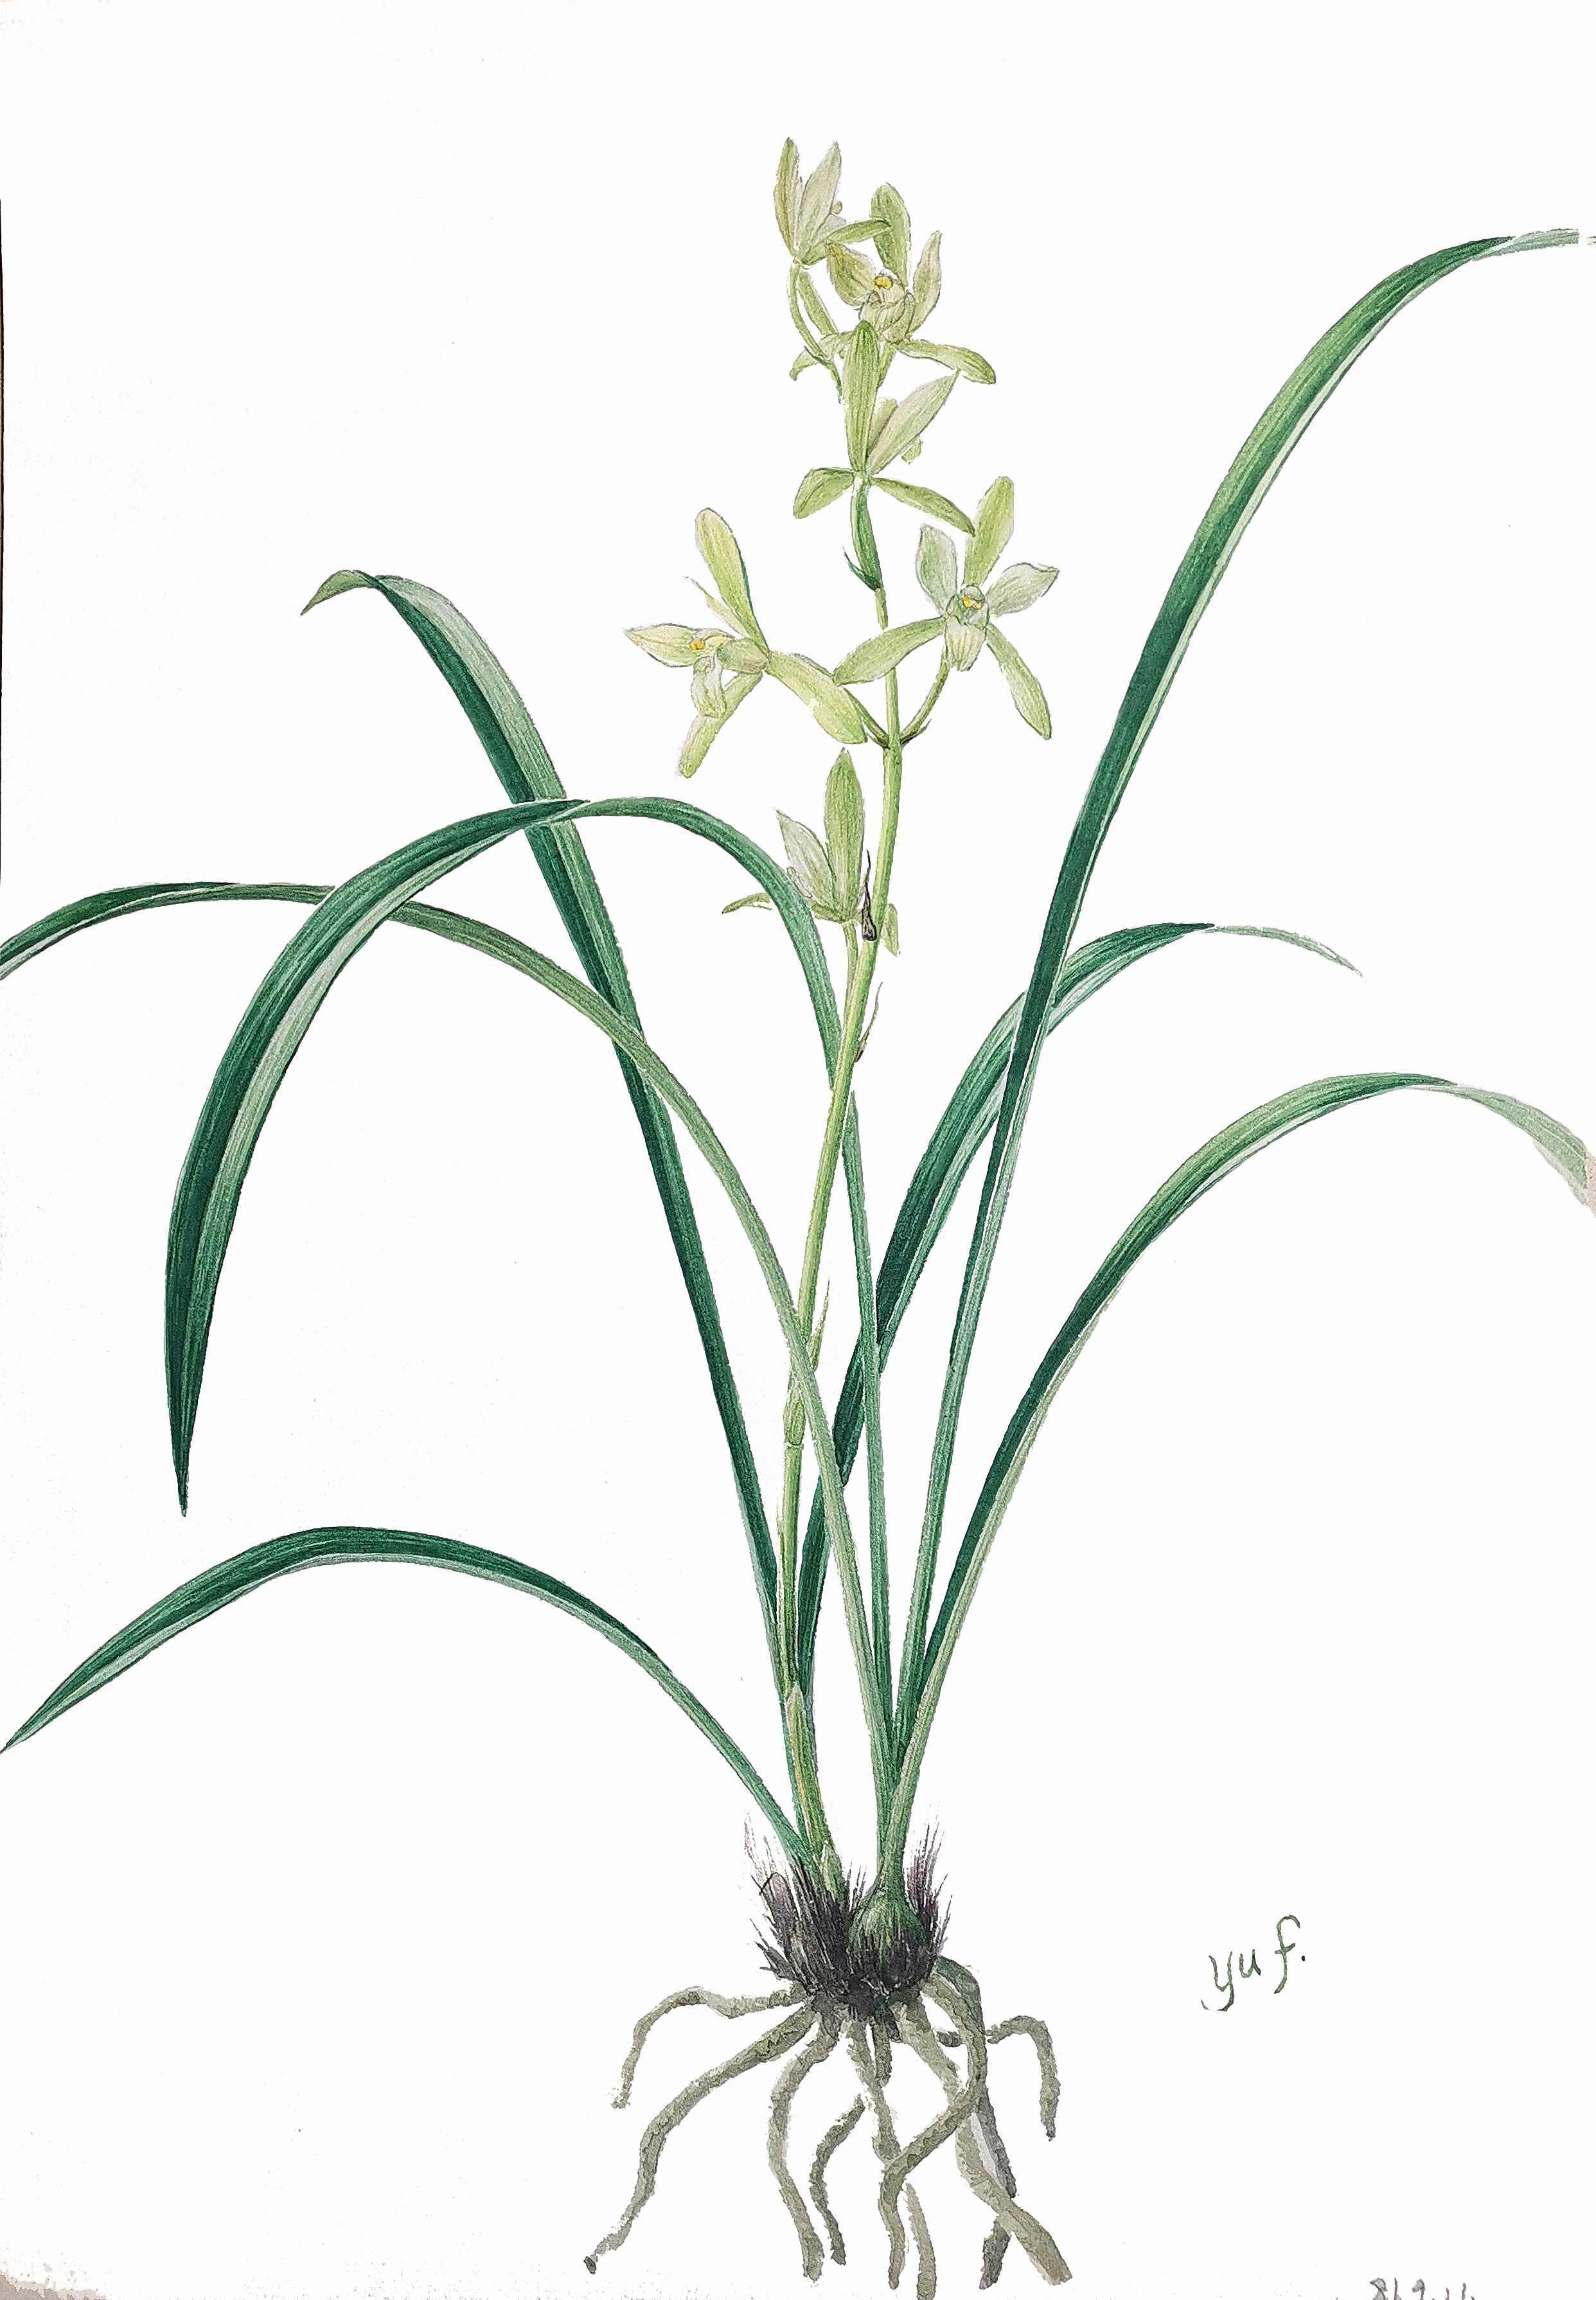 鐵骨素（Cymbidium ensifolium ‘Tie Gu Su’），是傳統中國蘭中建蘭的素心名品，歷來深受國人推崇。圖片來源：中國科學院華南植物園植物科學畫畫師余峰